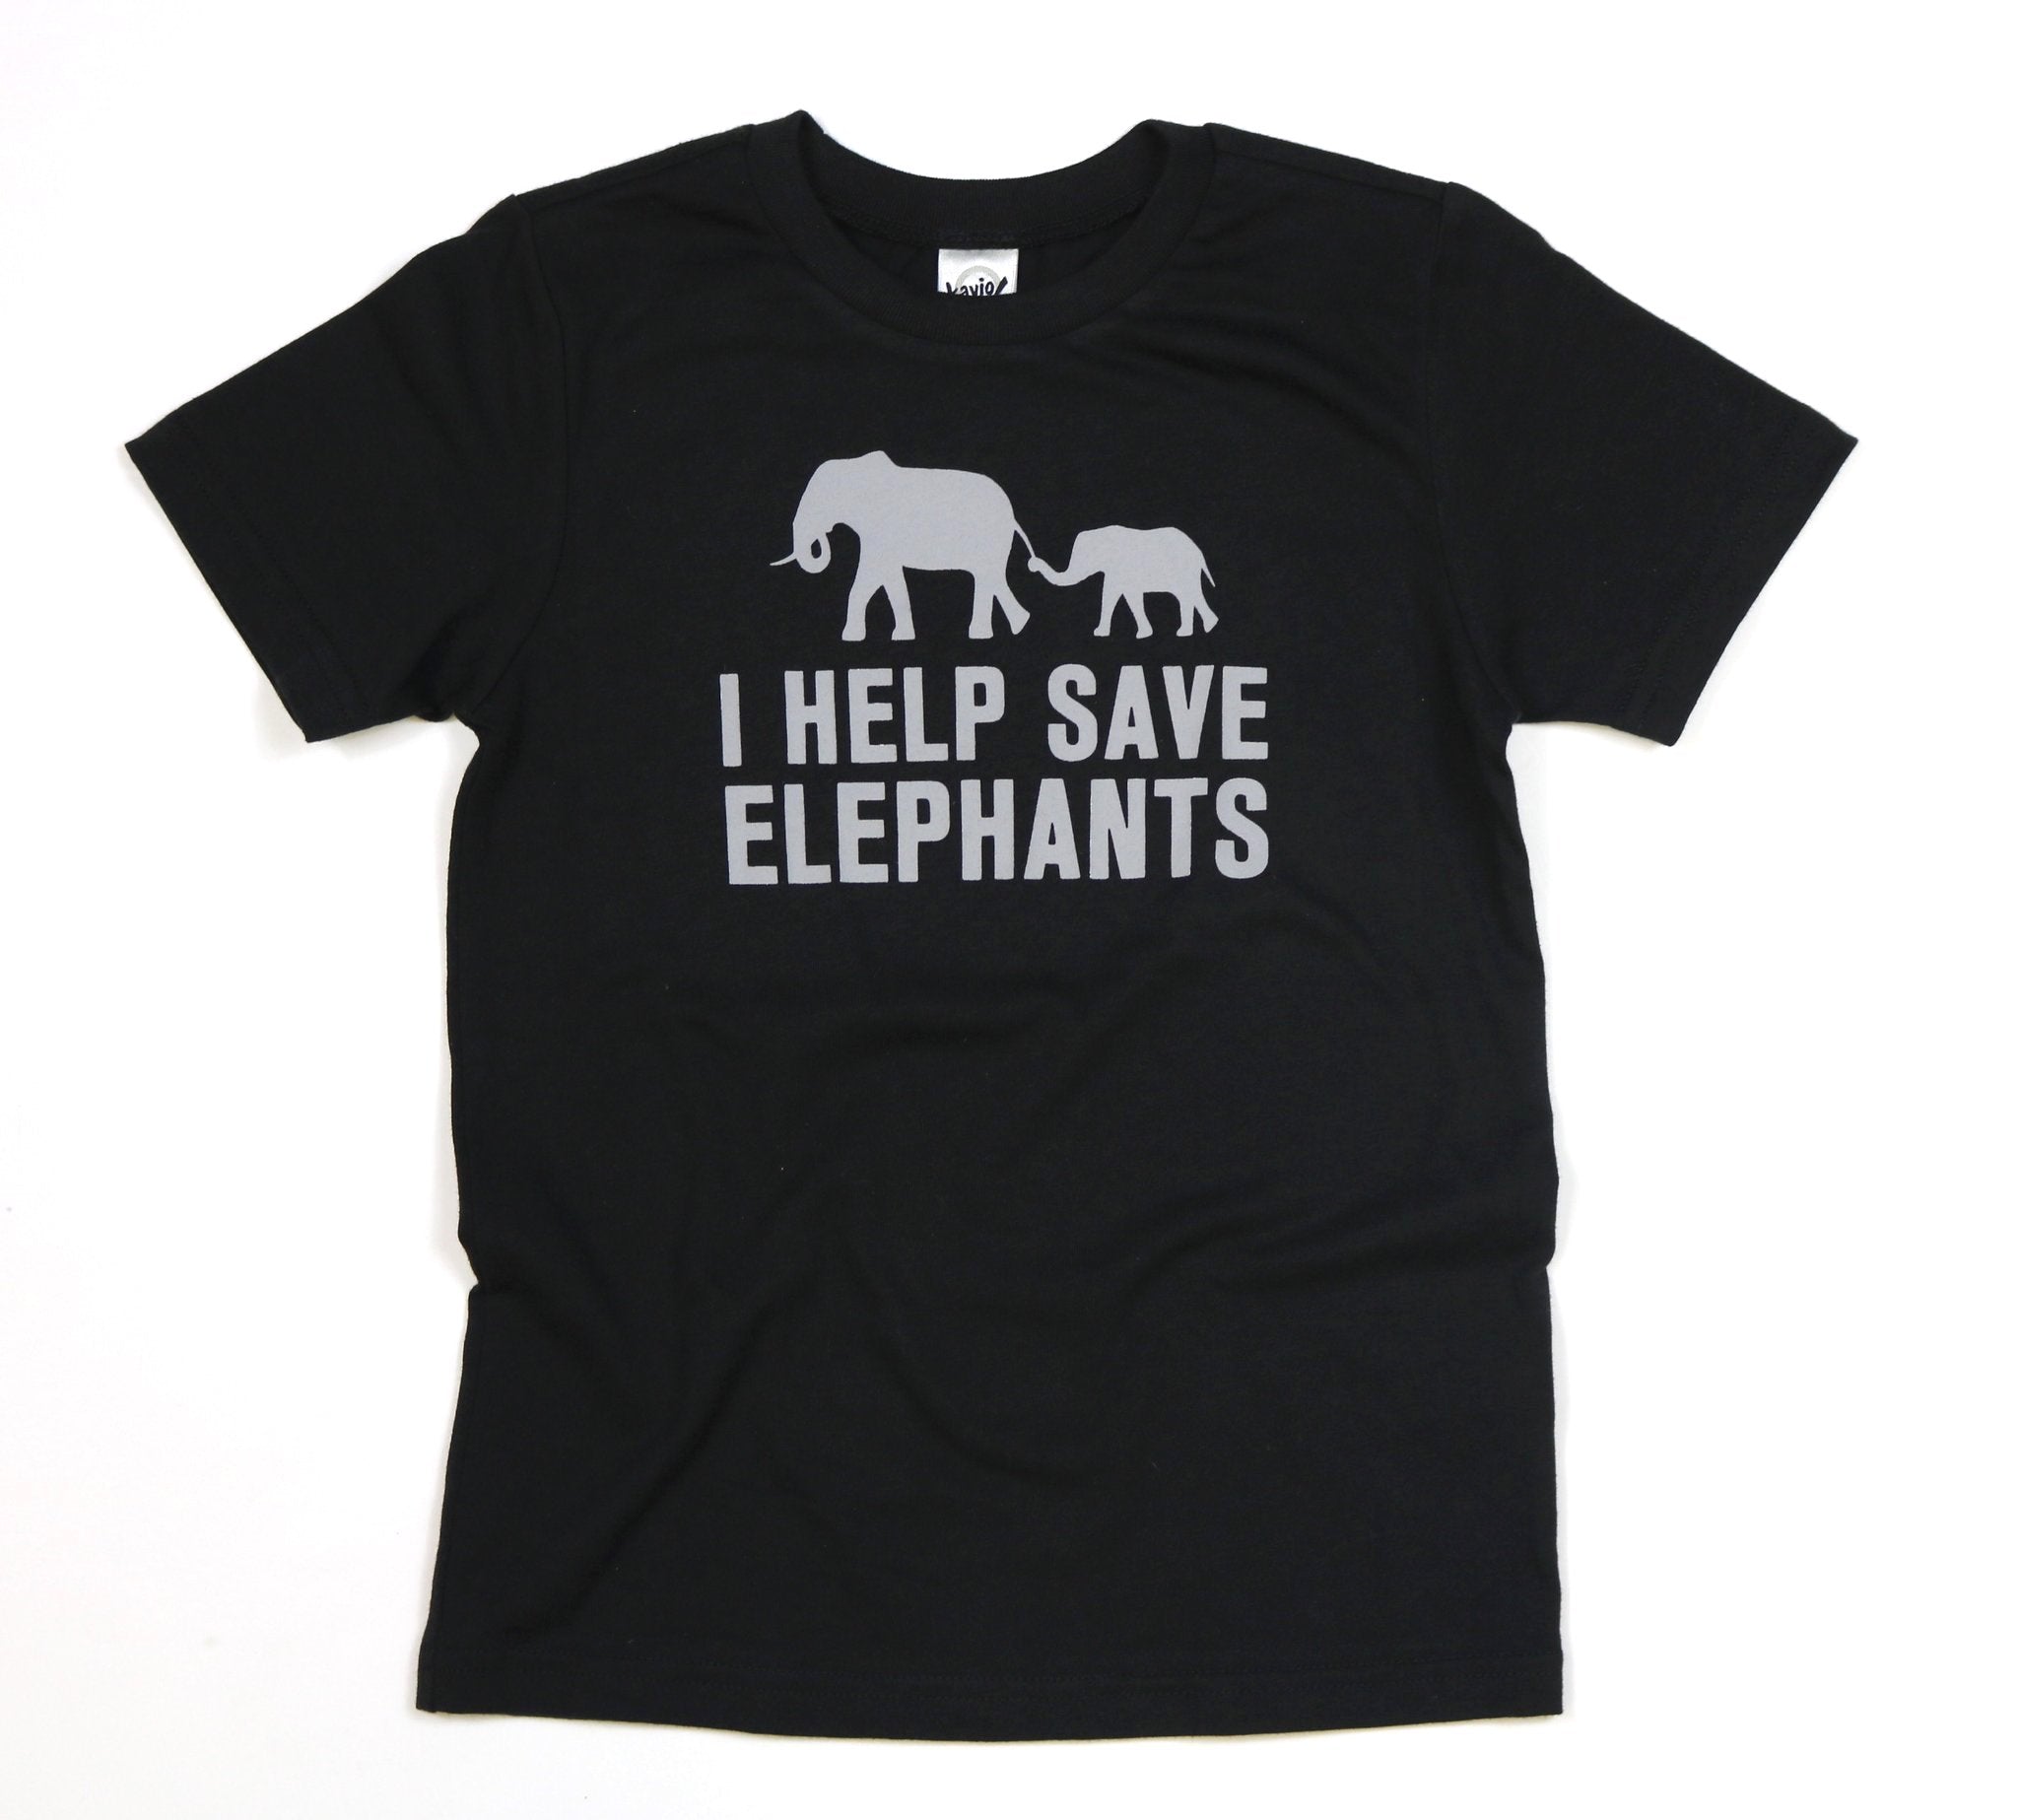 I Help Save Elephants Kids/Youth Unisex Tee